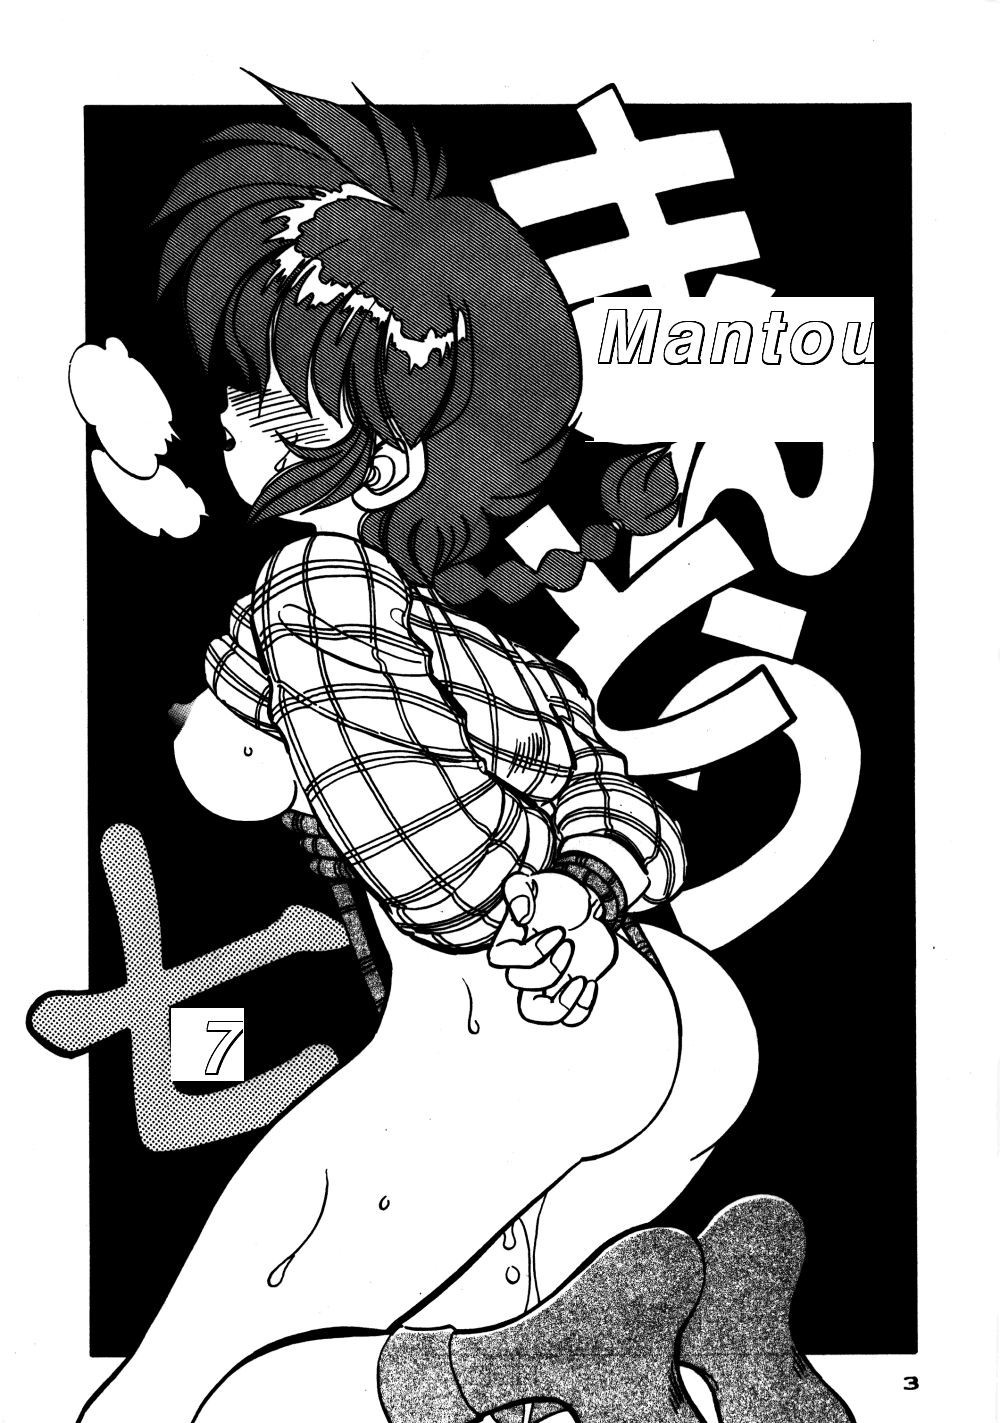 Mantou 7 ranma hentai manga